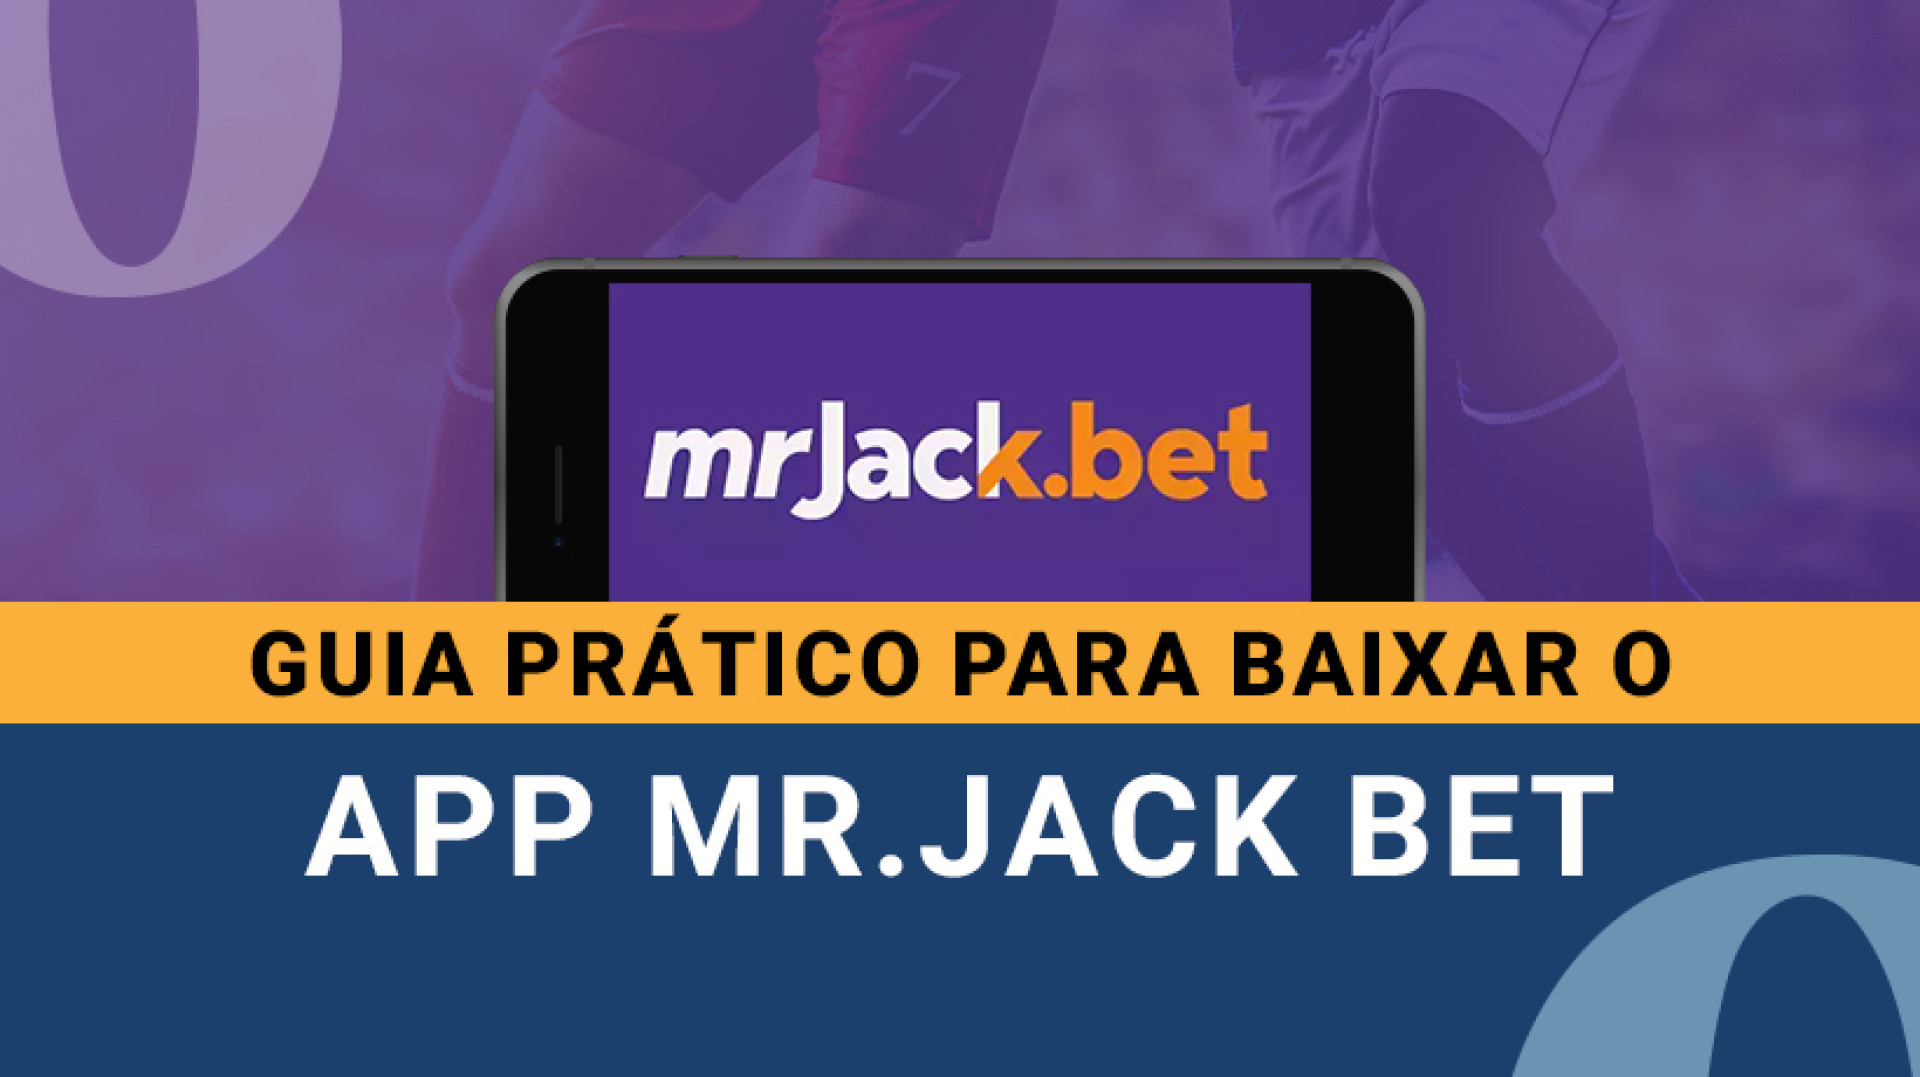 Veja como dar início às apostas diretamente do seu celular, onde e quando quiser, com o aplicativo MR.Jack Bet